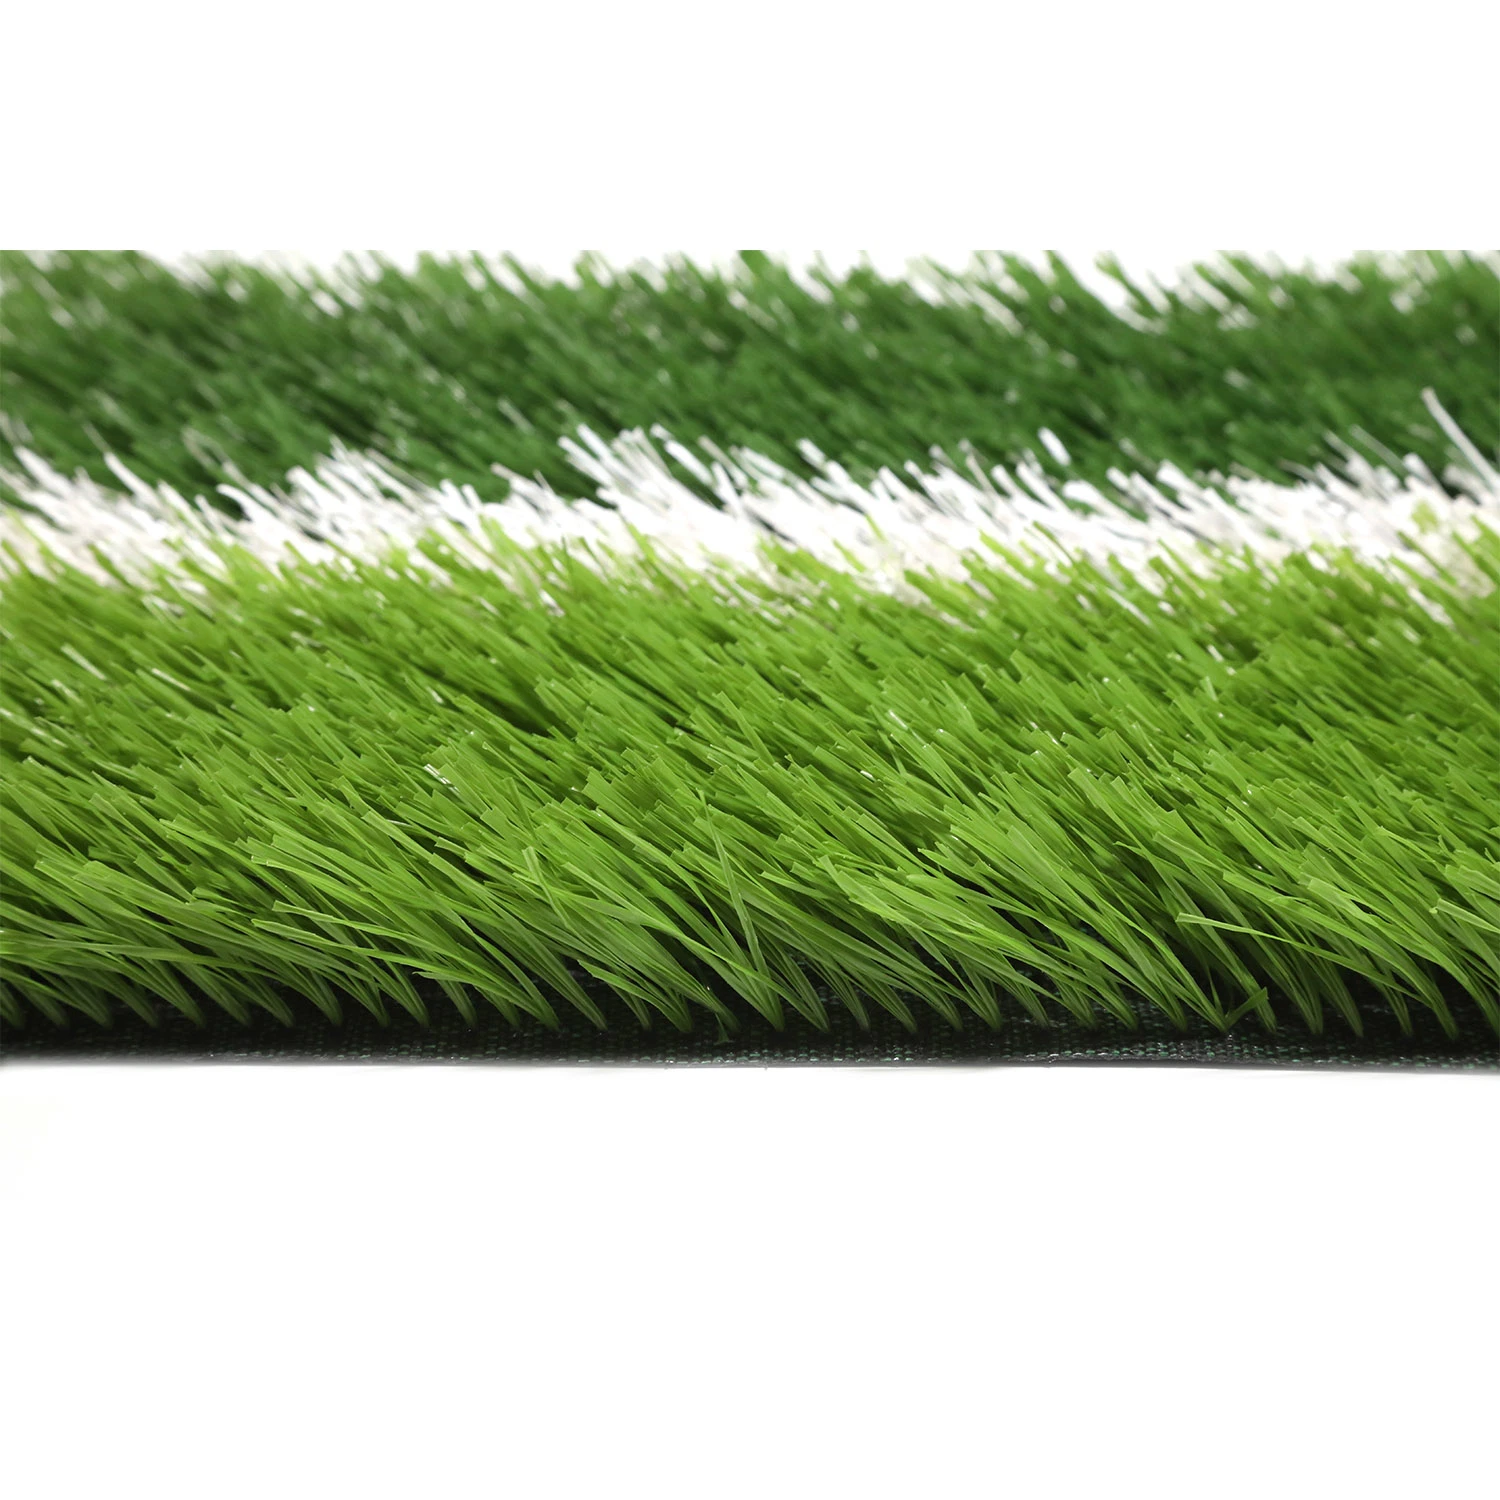 8800 Dtex 25мм Lw пластиковые мешки тканый коврик для травяных культур ландшафт